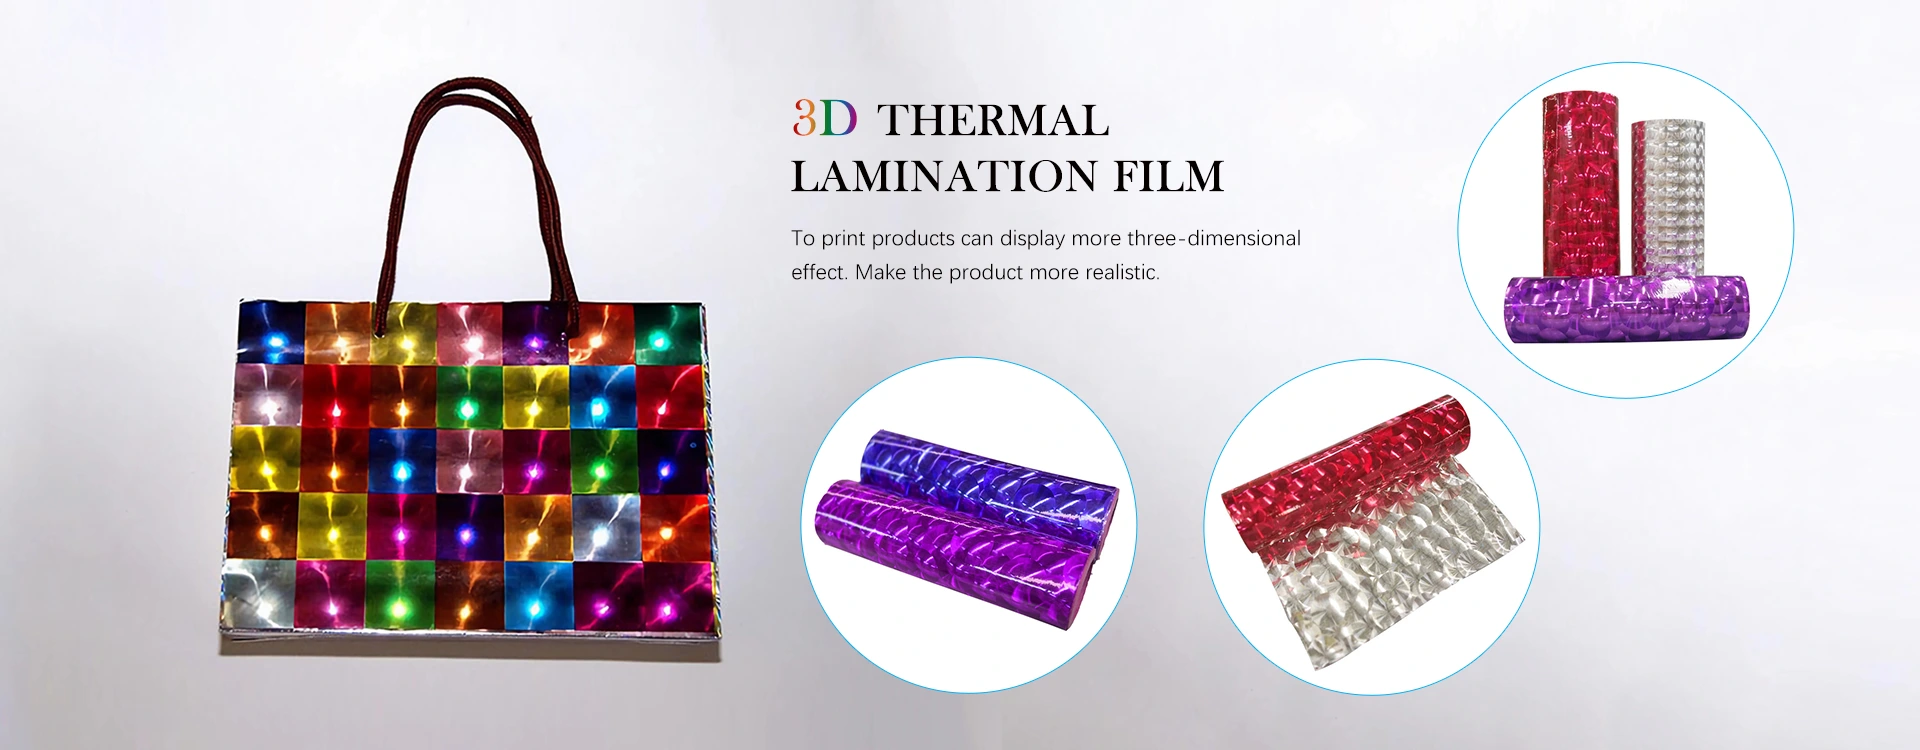 Виробники плівки для термоламінування 3D